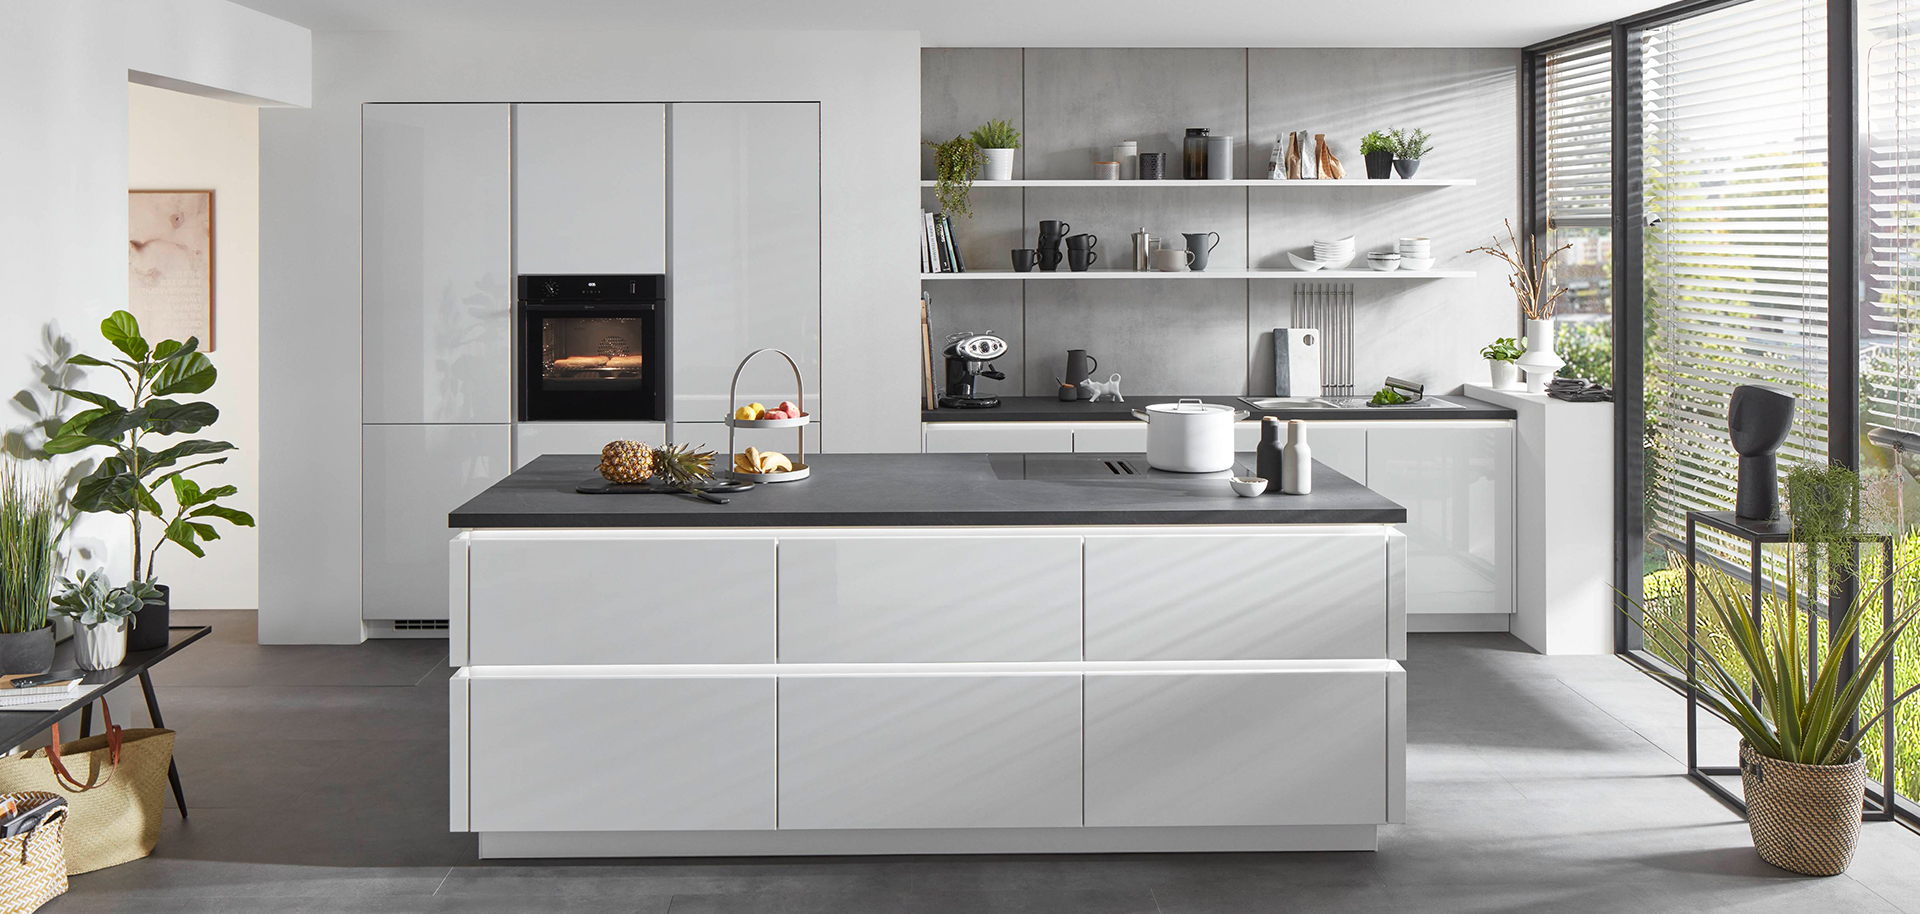 Moderne Küche mit weißen Schränken, integrierten Geräten und einer zentralen Insel mit dunkler Arbeitsplatte, ergänzt durch natürliches Licht und minimalistische Dekoration.